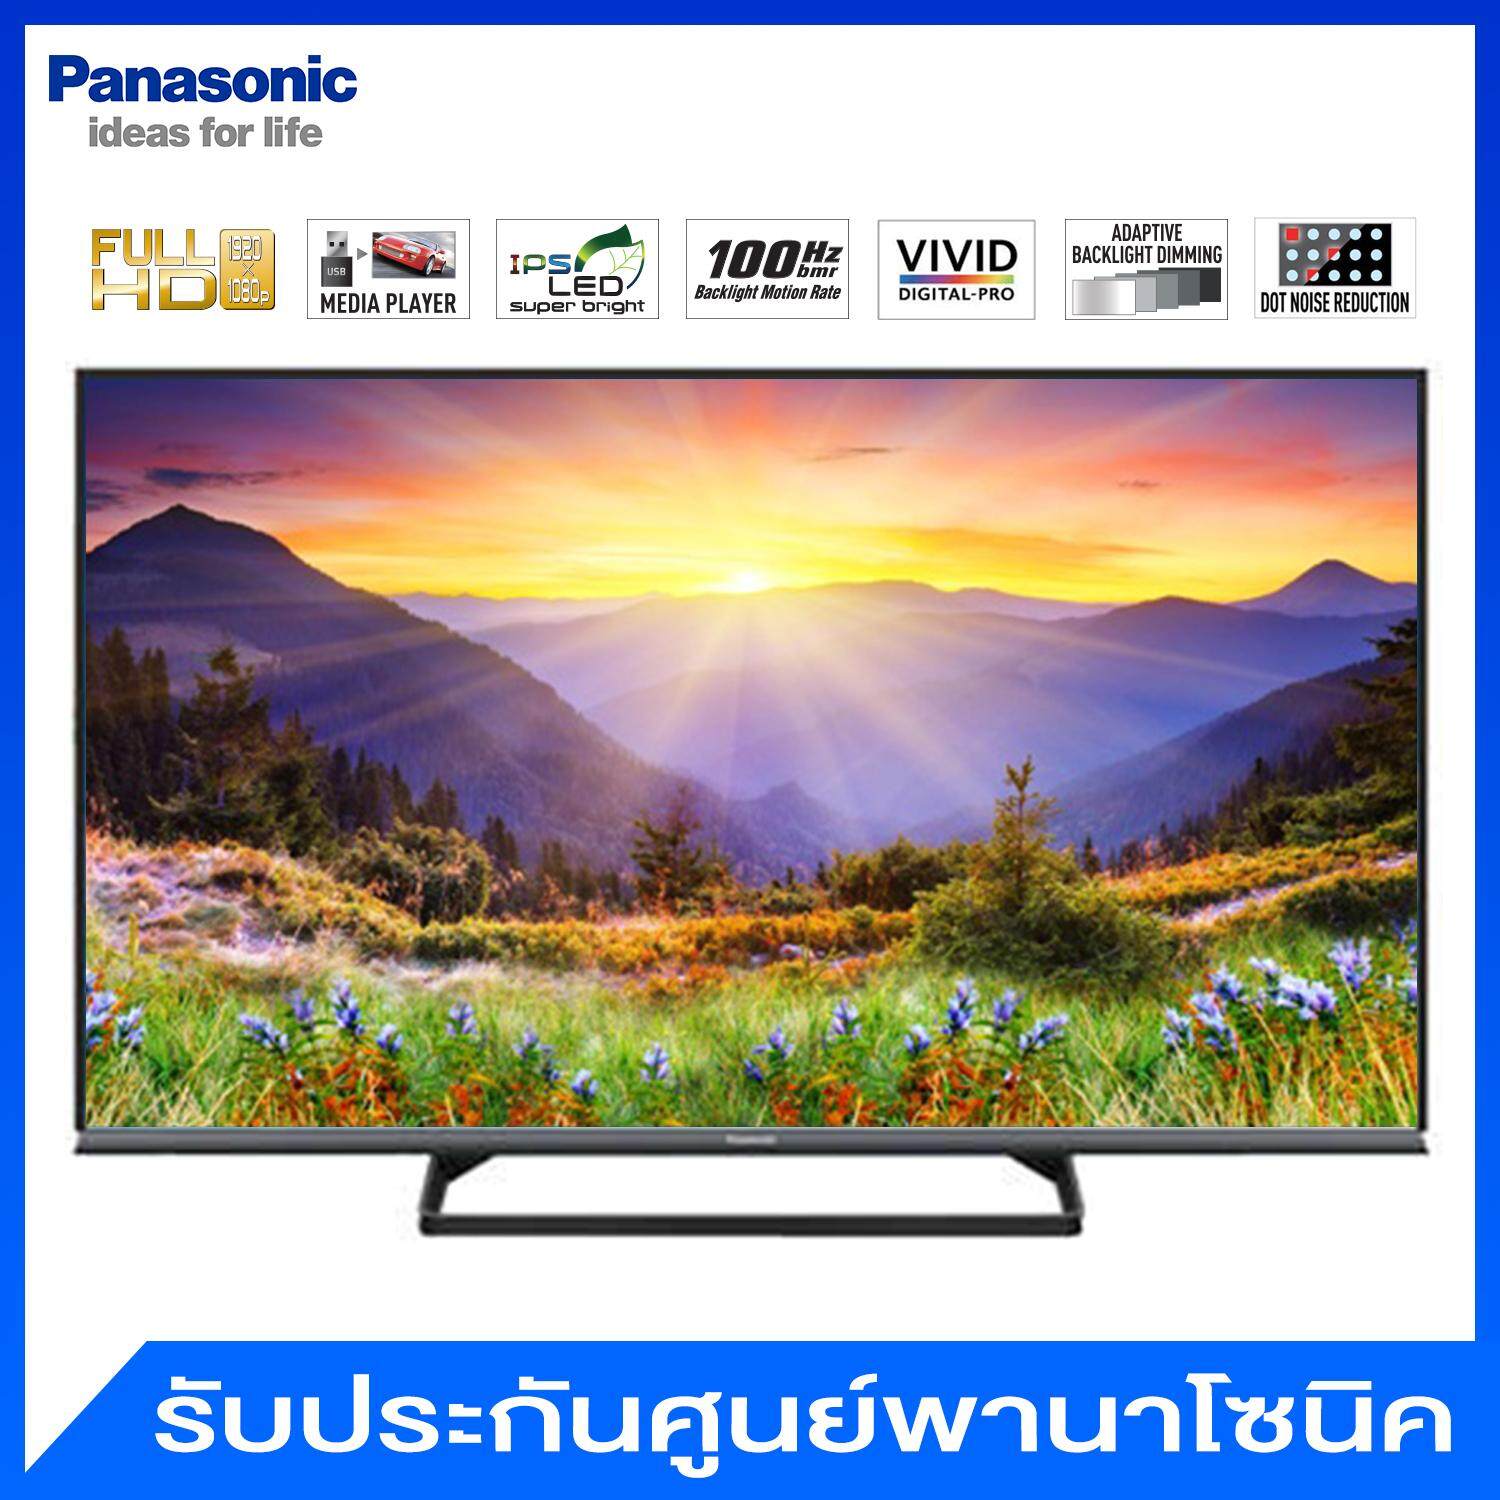 Panasonic LED Smart TV (Full HD) ขนาด 50 นิ้ว รุ่น TH-50AS610T